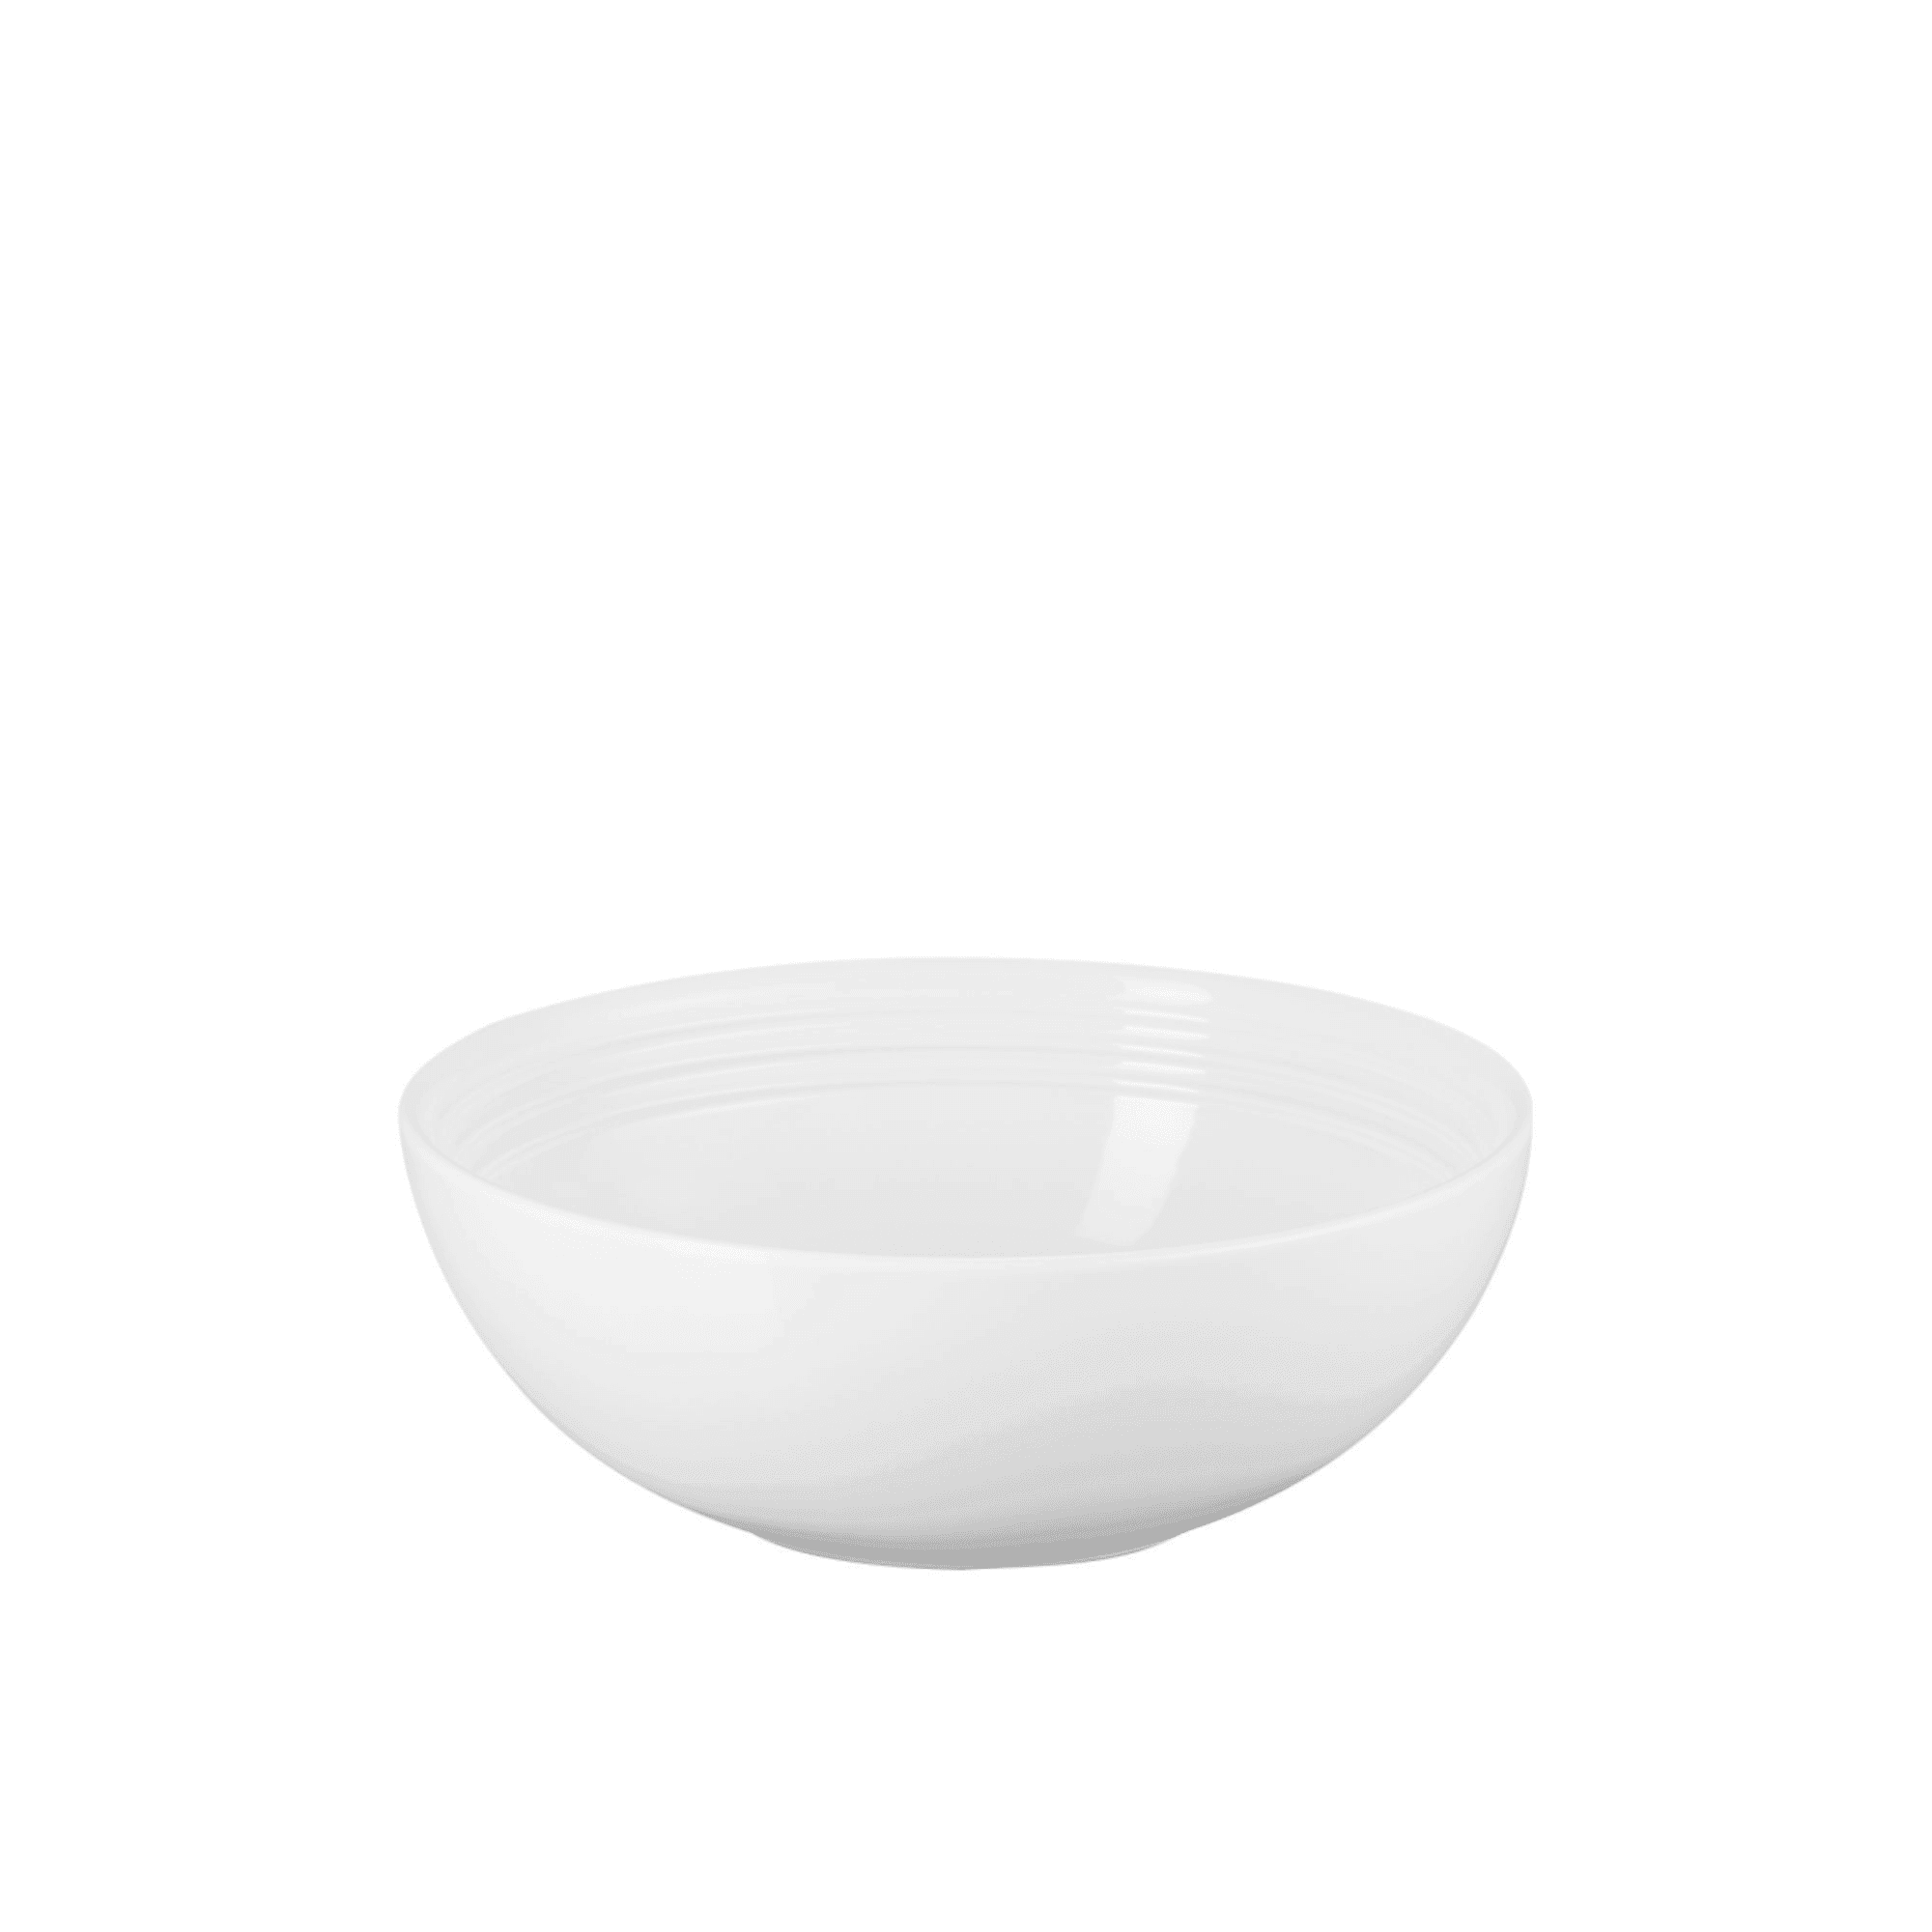 Le Creuset Stoneware Serving Bowl 24cm White Image 1